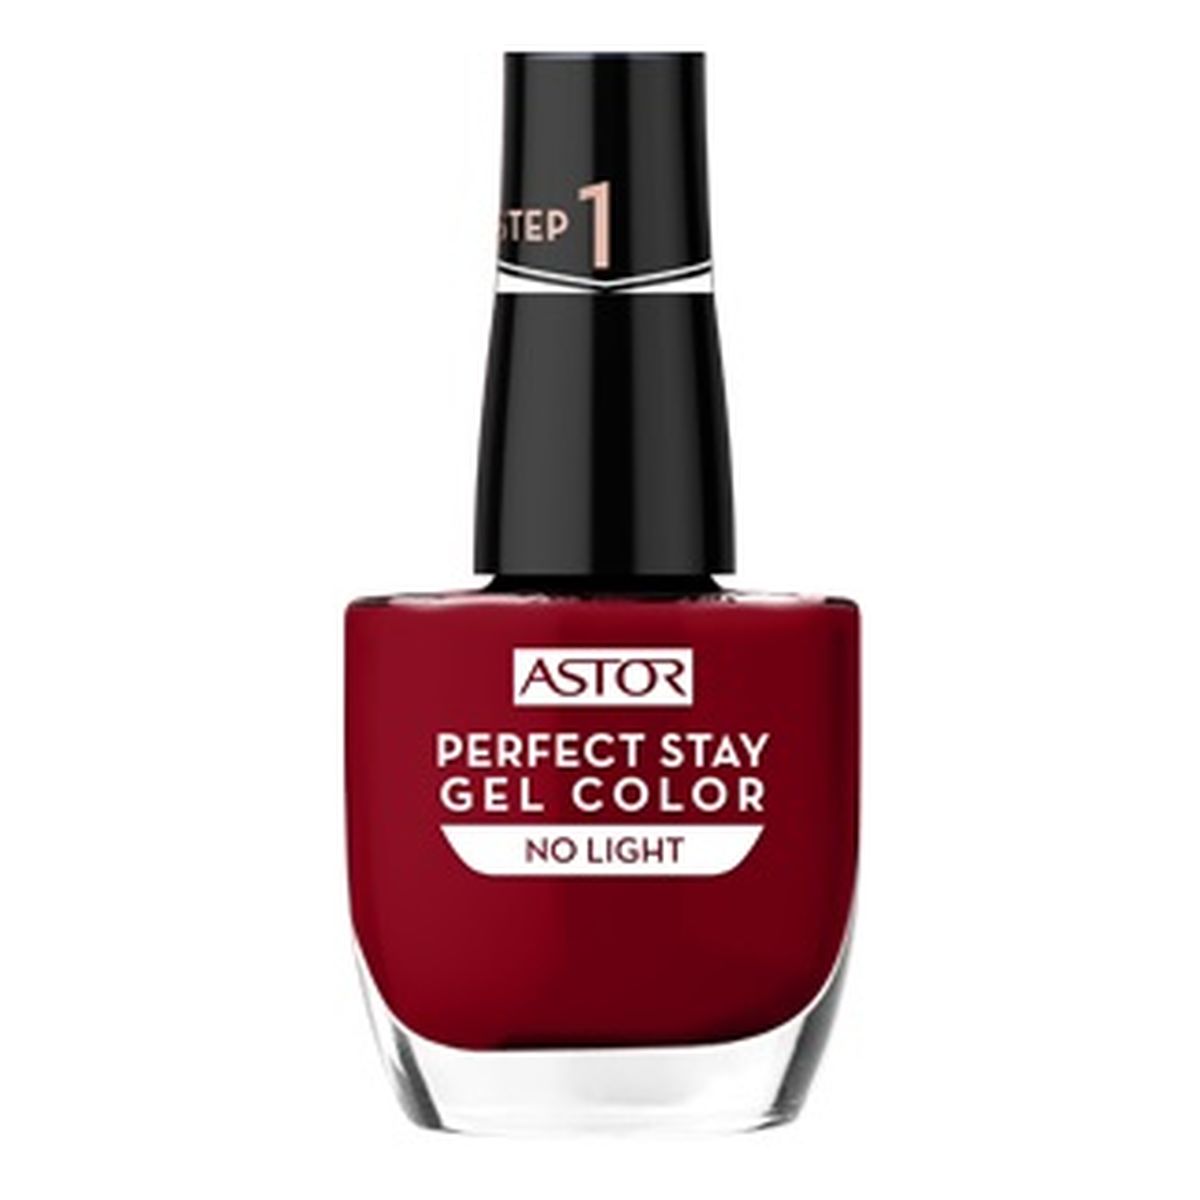 Astor Perfect Stay Gel Color Żelowy lakier do paznokci 12ml